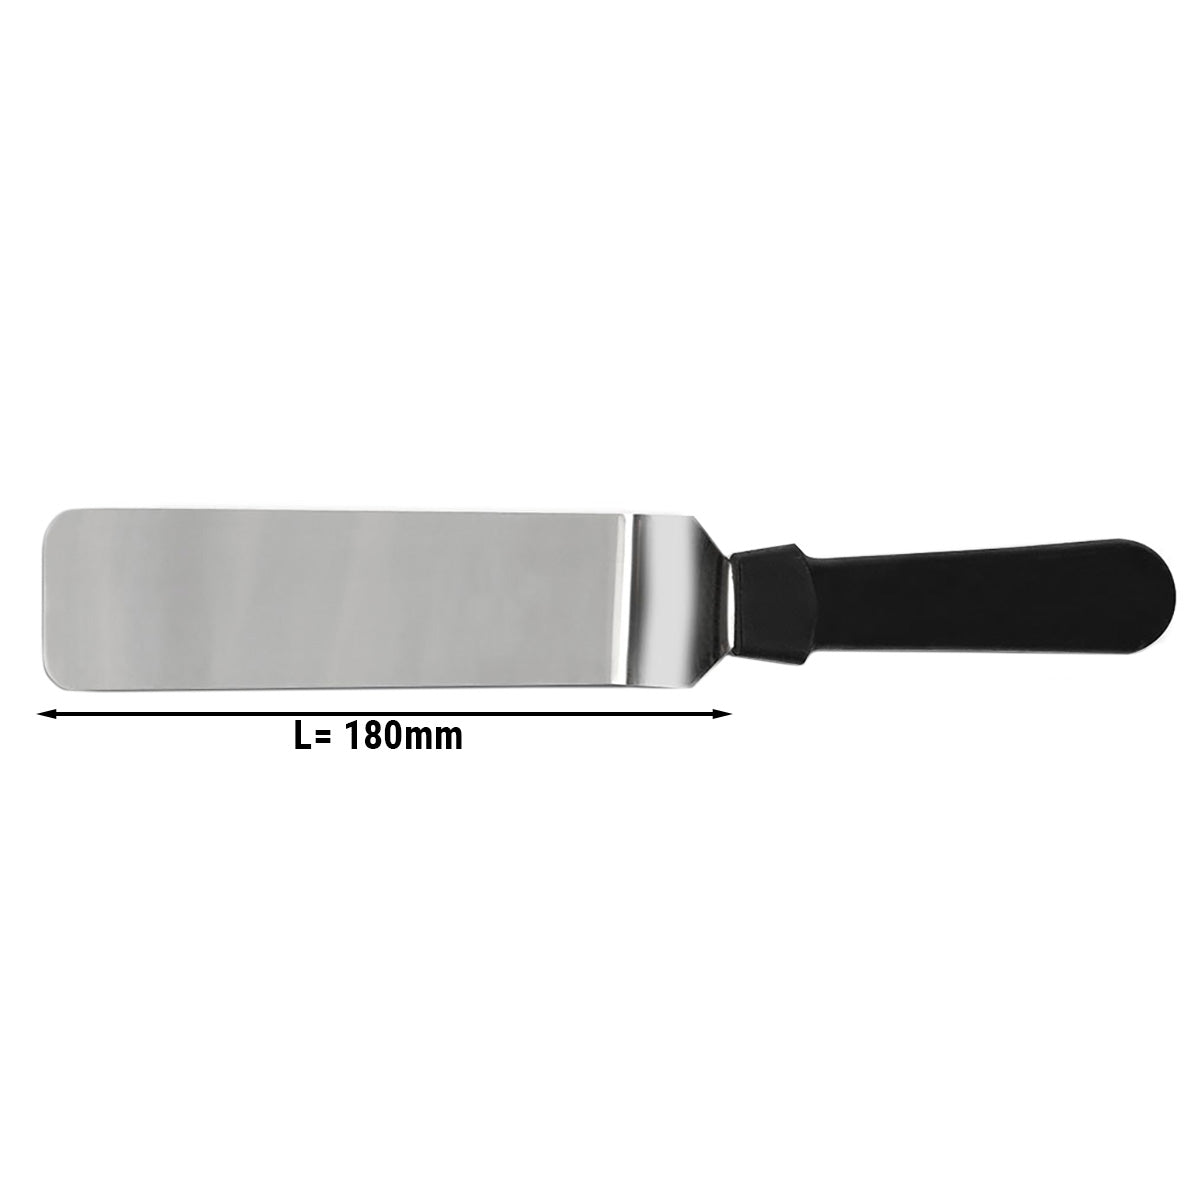 Vinklet palettkniv - 18 cm